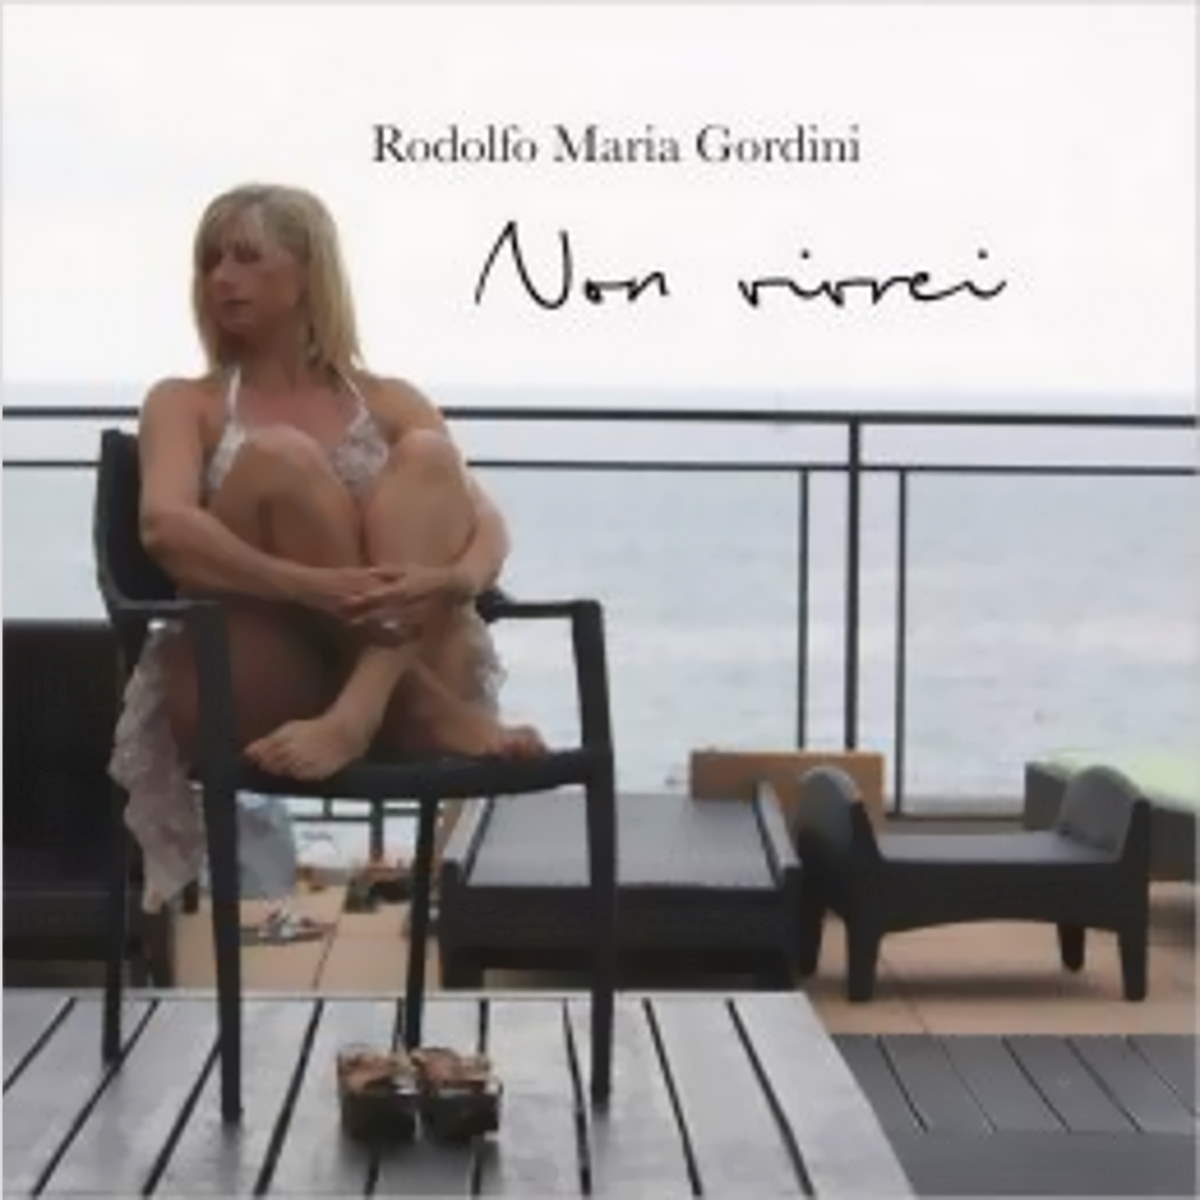 RODOLFO MARIA GORDINI, ”Non vivrei” è l’inno d’amore scritto da Mauro lo Sole e interpretato dal tenore e cantautore italiano